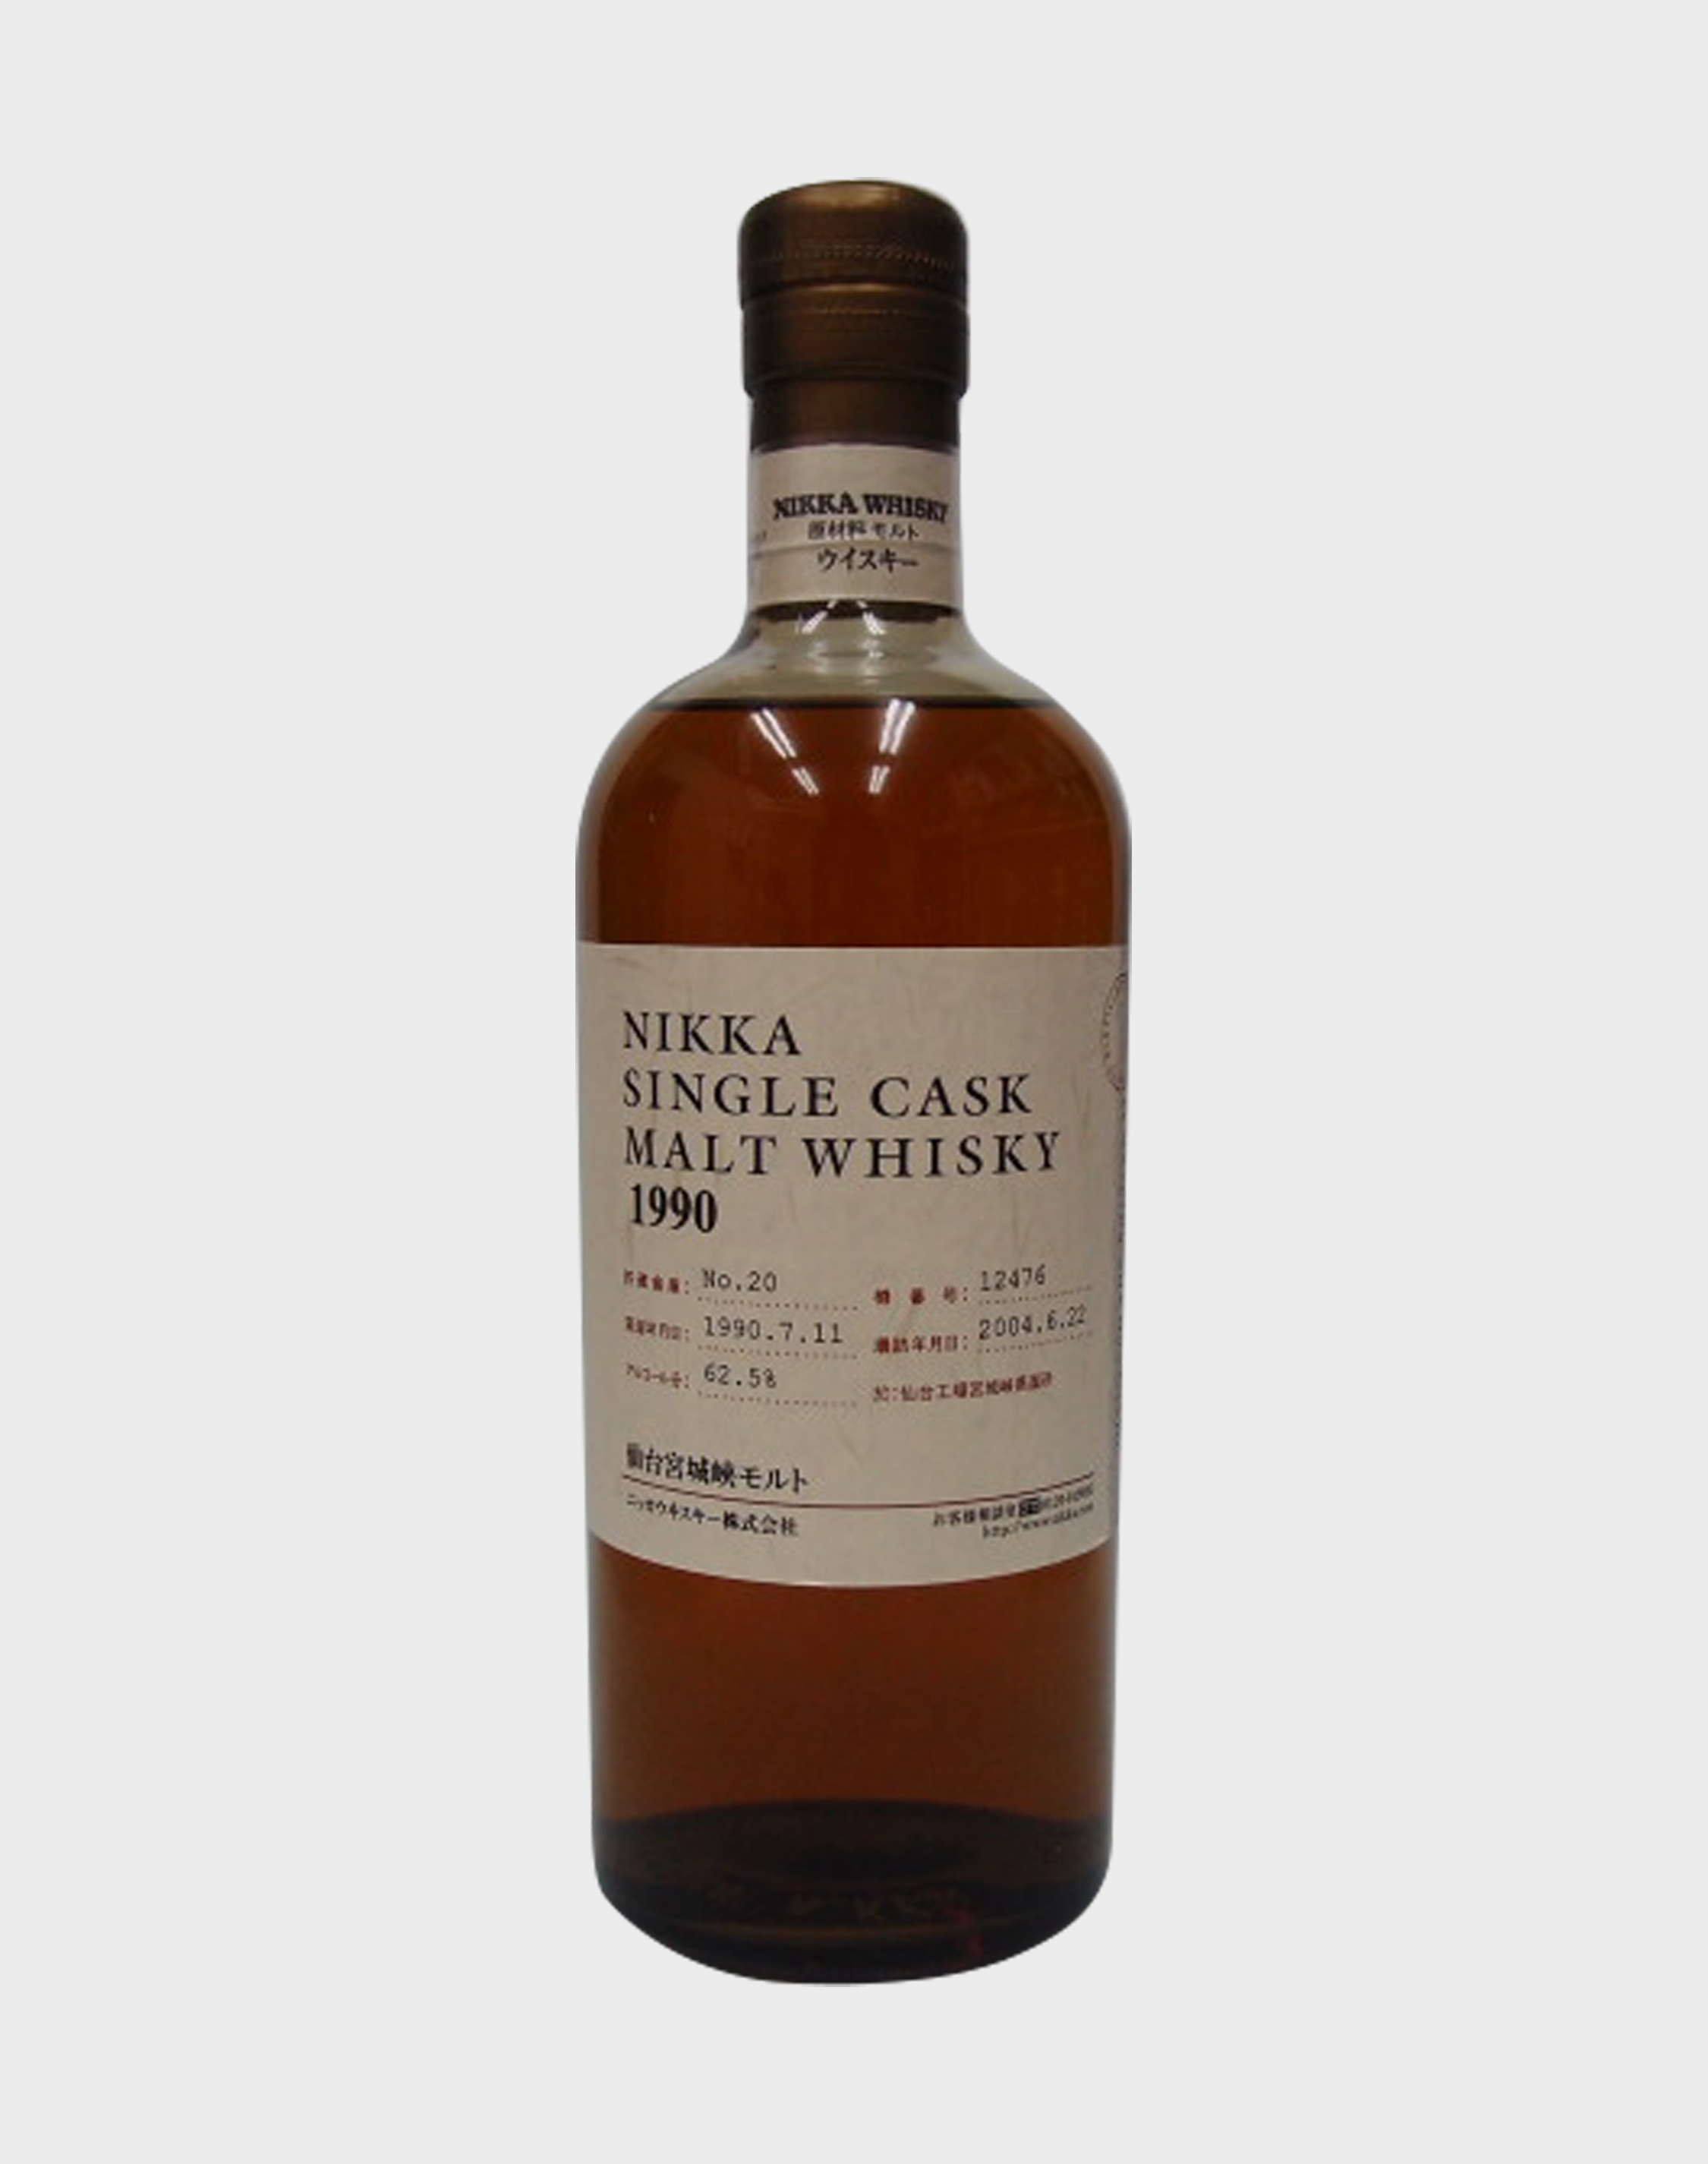 Nikka Single Cask Malt Whisky 1990